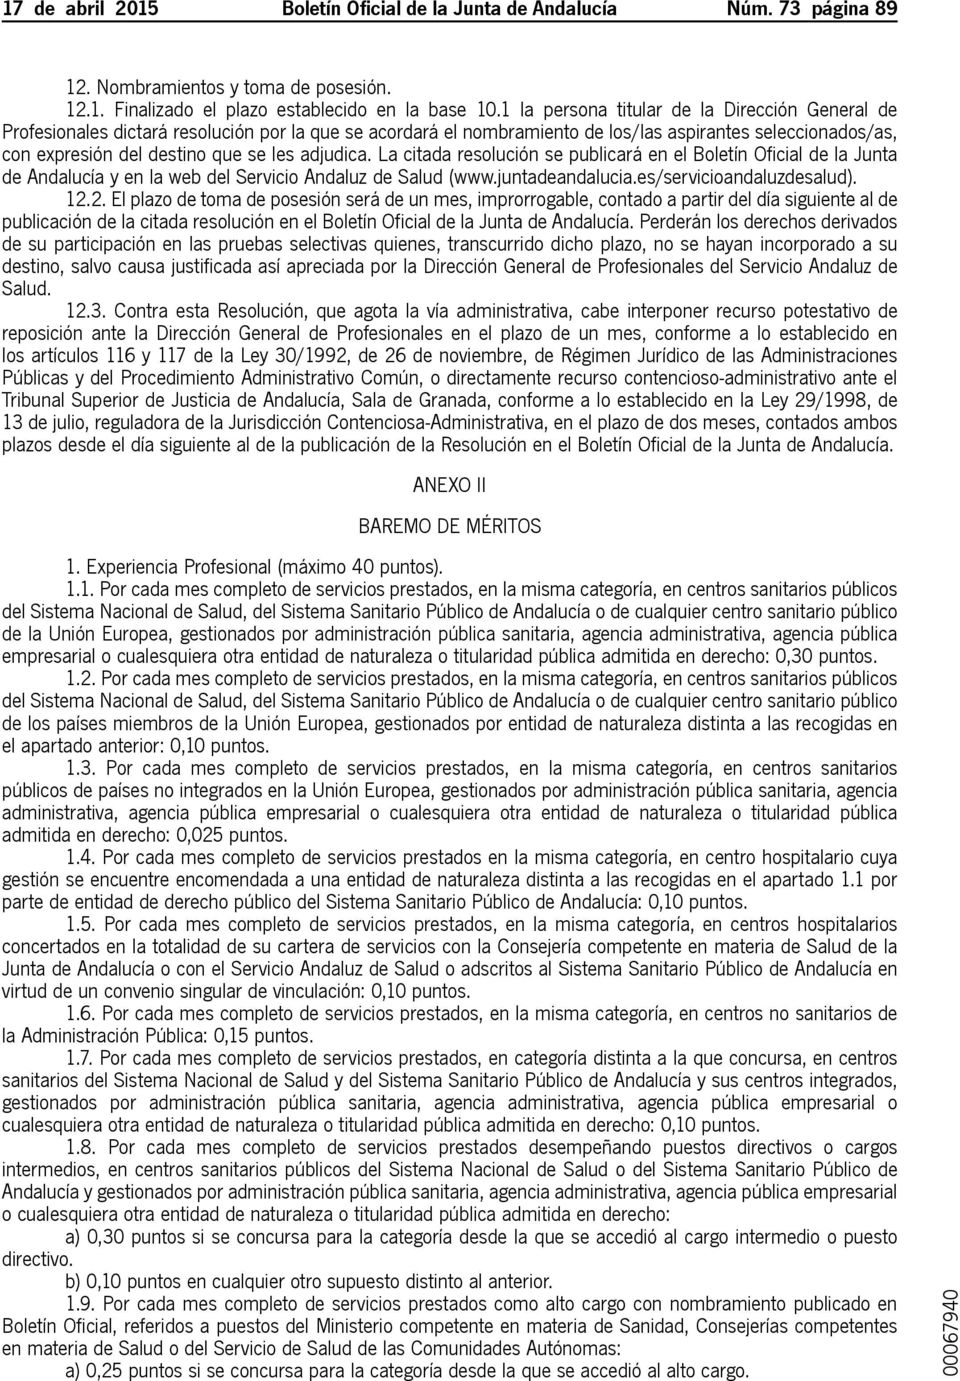 adjudica. La citada resolución se publicará en el Boletín Oficial de la Junta de Andalucía y en la web del Servicio Andaluz de Salud (www.juntadeandalucia.es/servicioandaluzdesalud). 12.